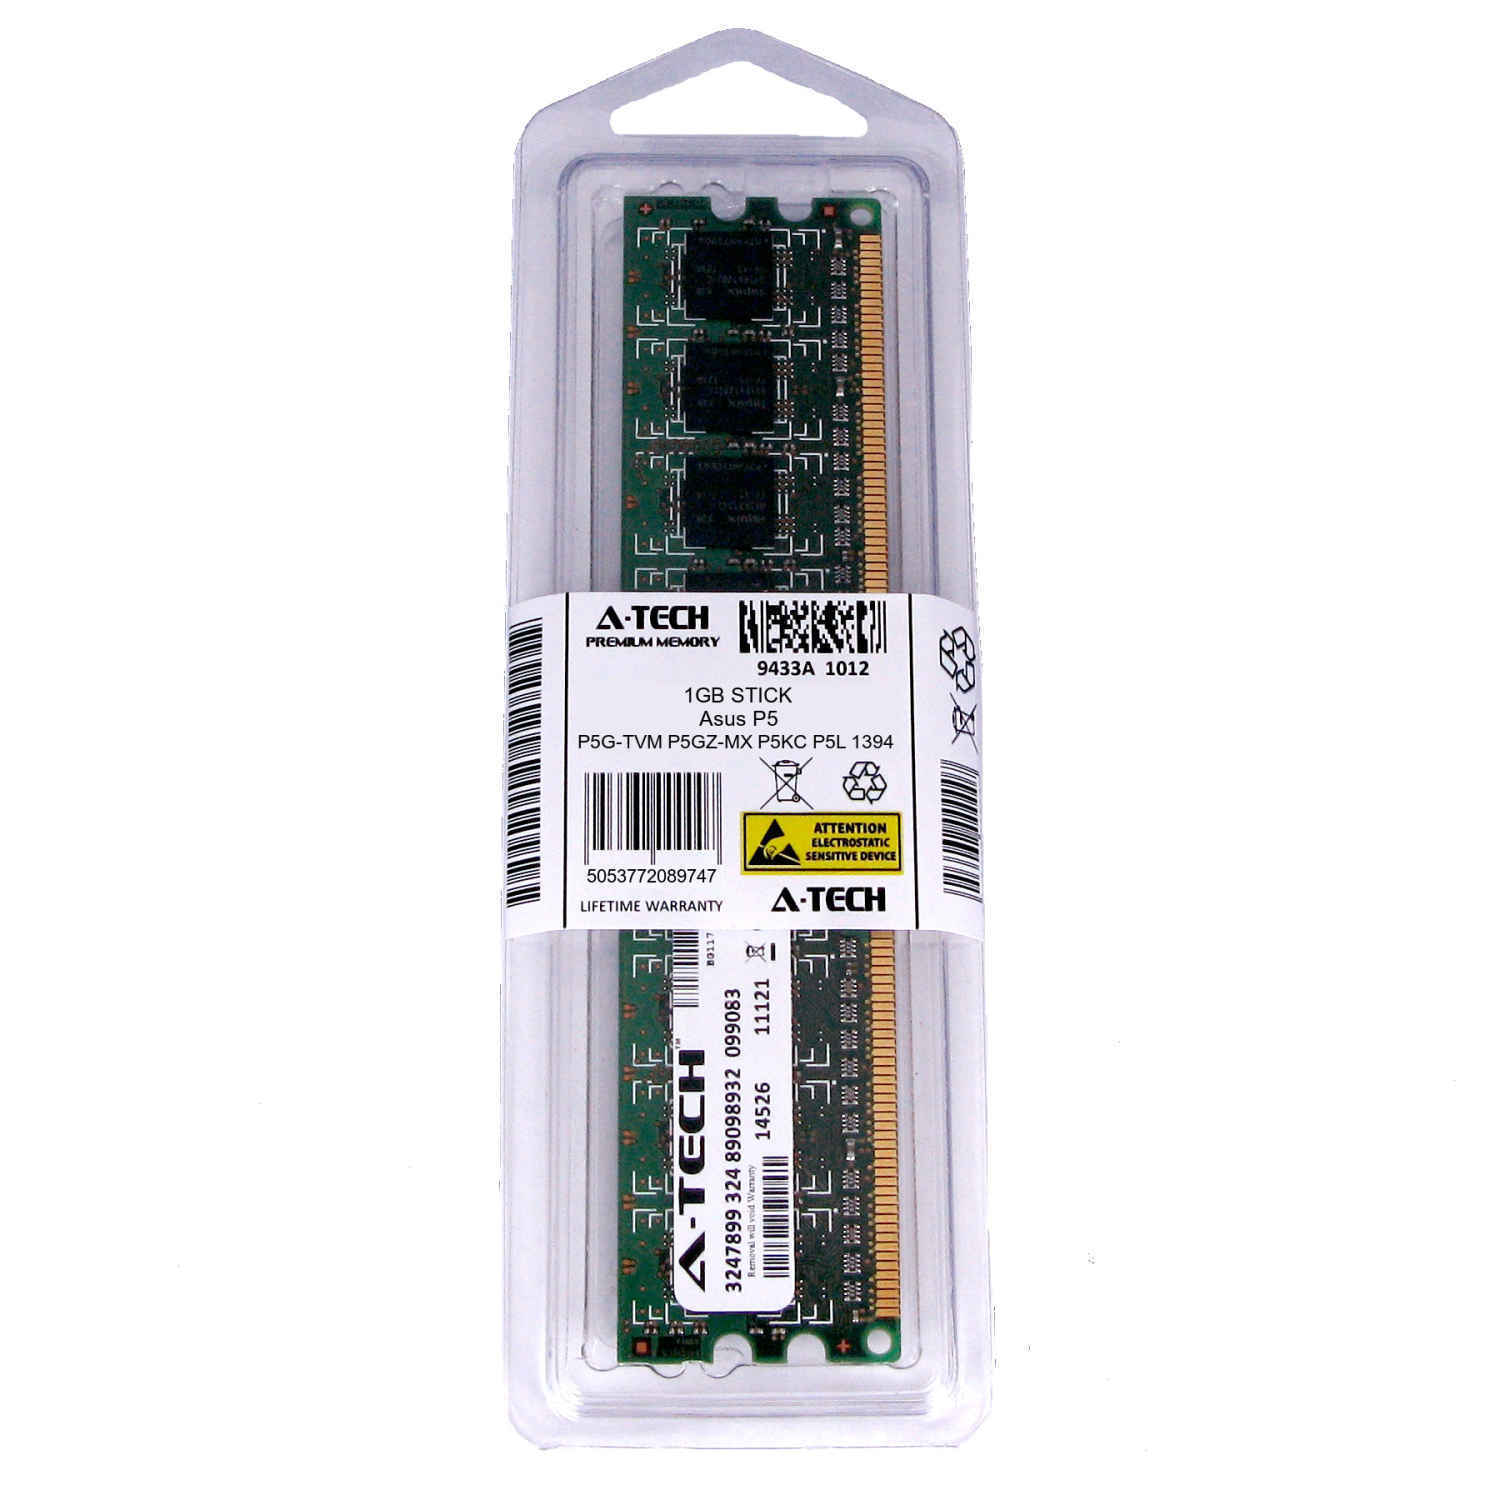 1GB DIMM Asus P5G-TVM P5GZ-MX P5KC P5L 1394 P5LD2 P5LD2 Deluxe Ram Memory